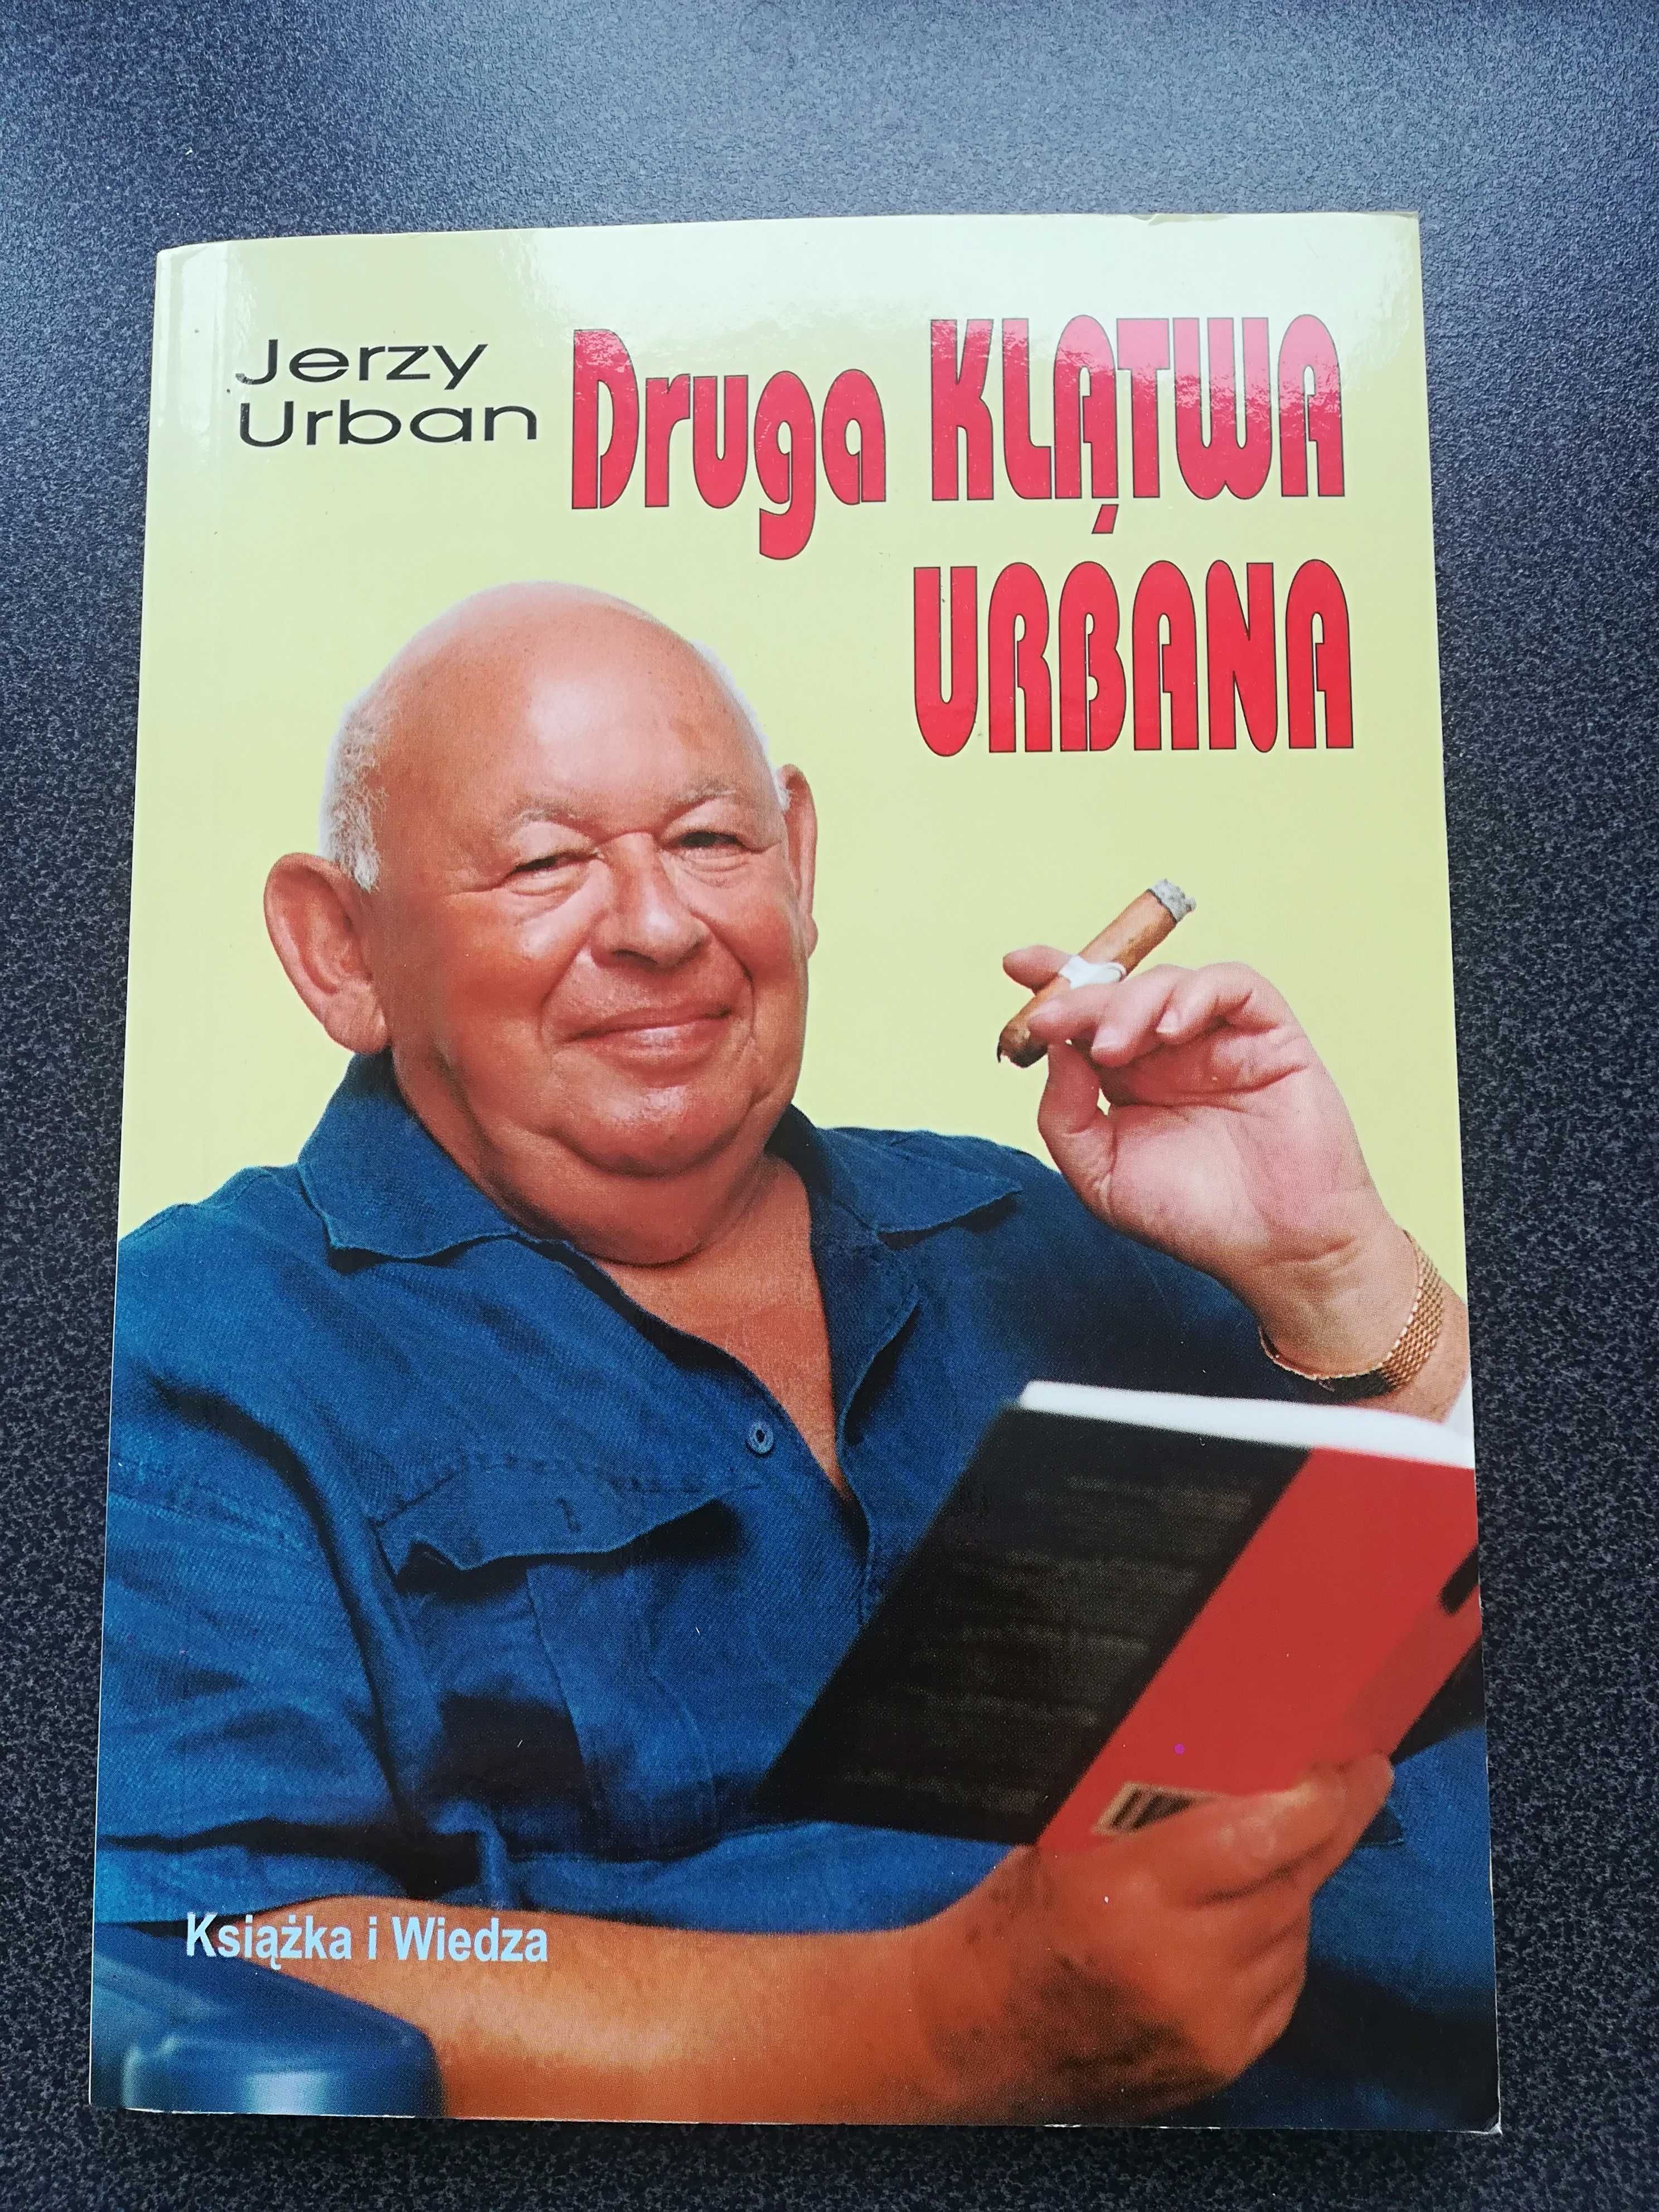 Jerzy Urban Druga klątwa Urbana, historia Polski